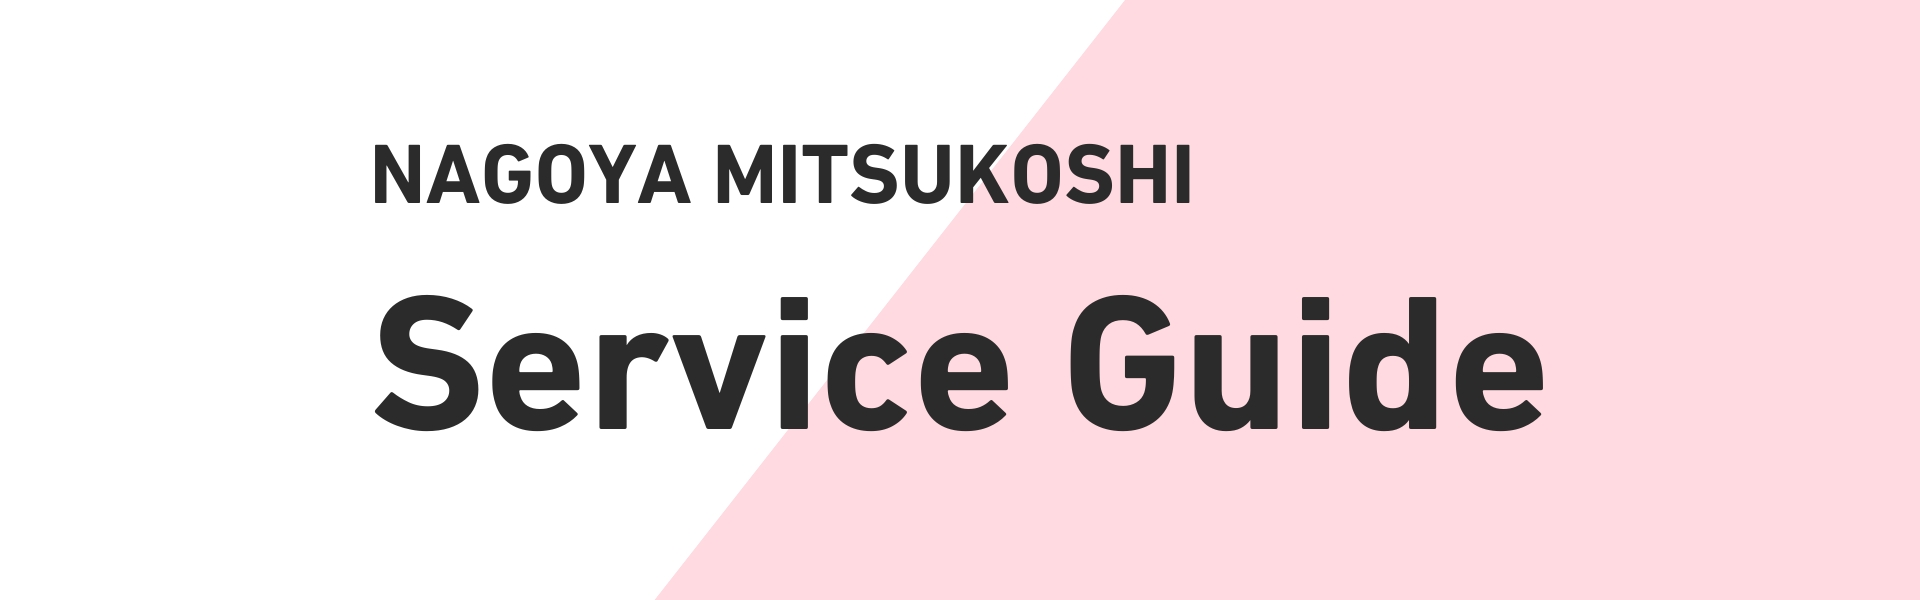 NAGOYA MITSUKOSHI Service Guide